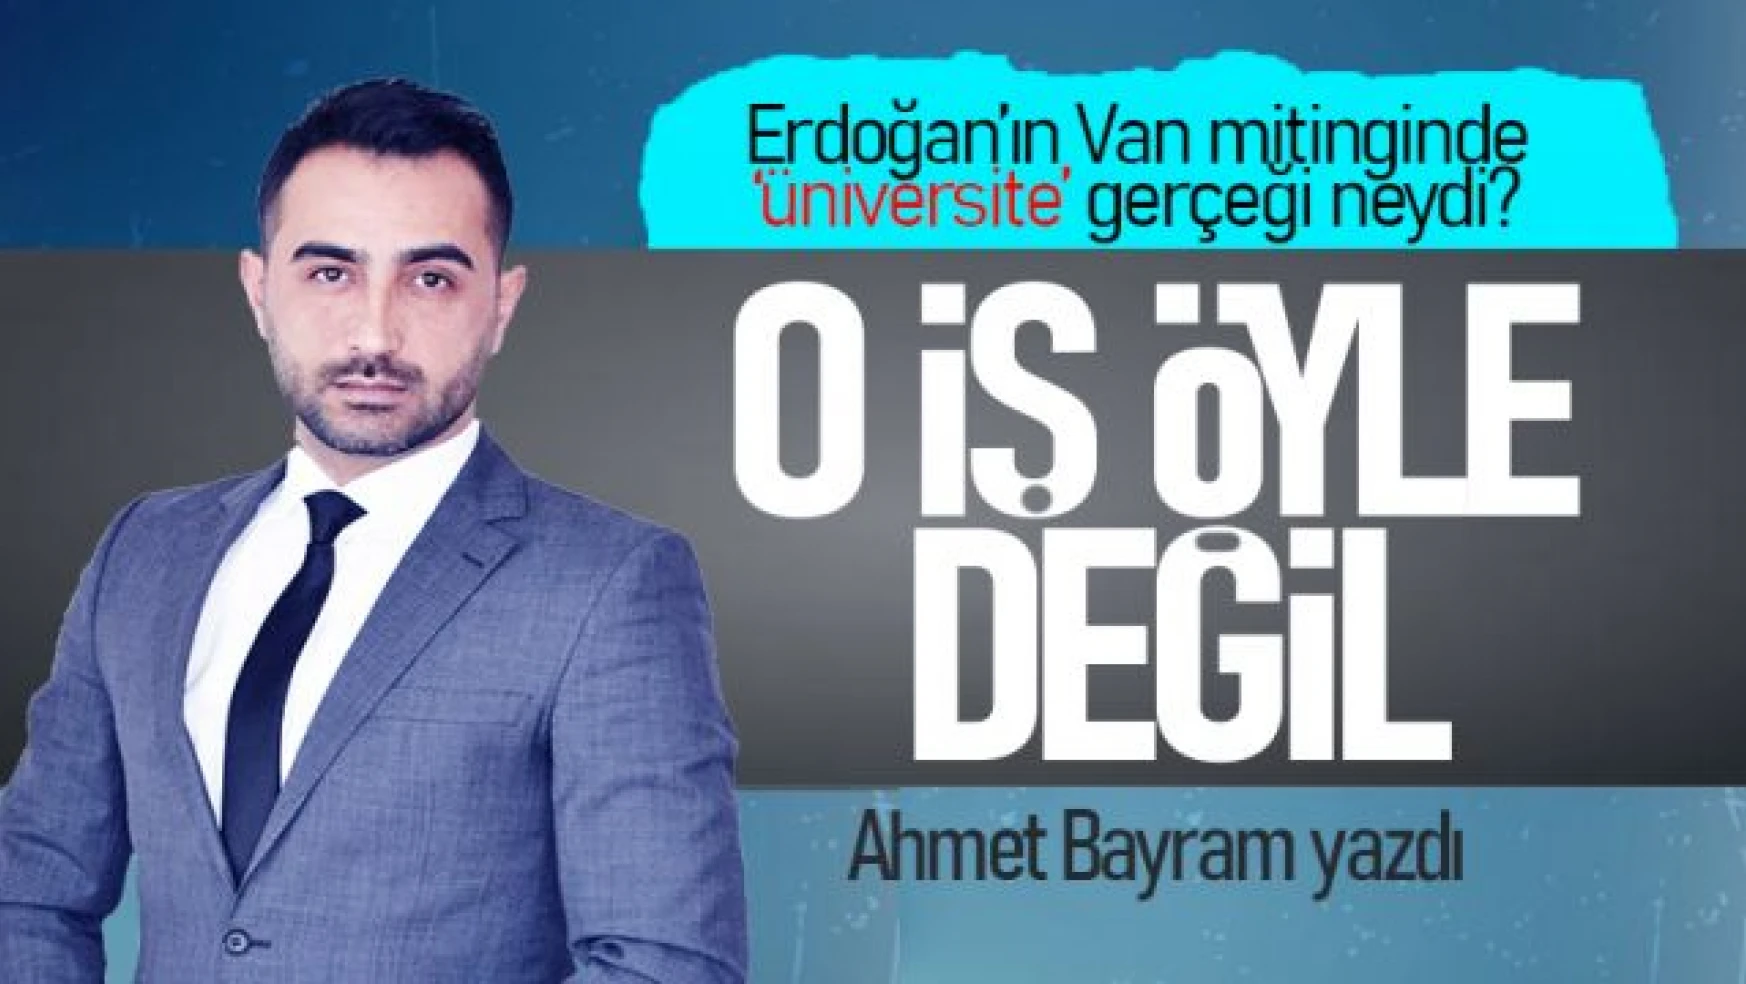 Ahmet Bayram yazdı... 'Van'a üniversiteyi biz getirdik' gerçeği